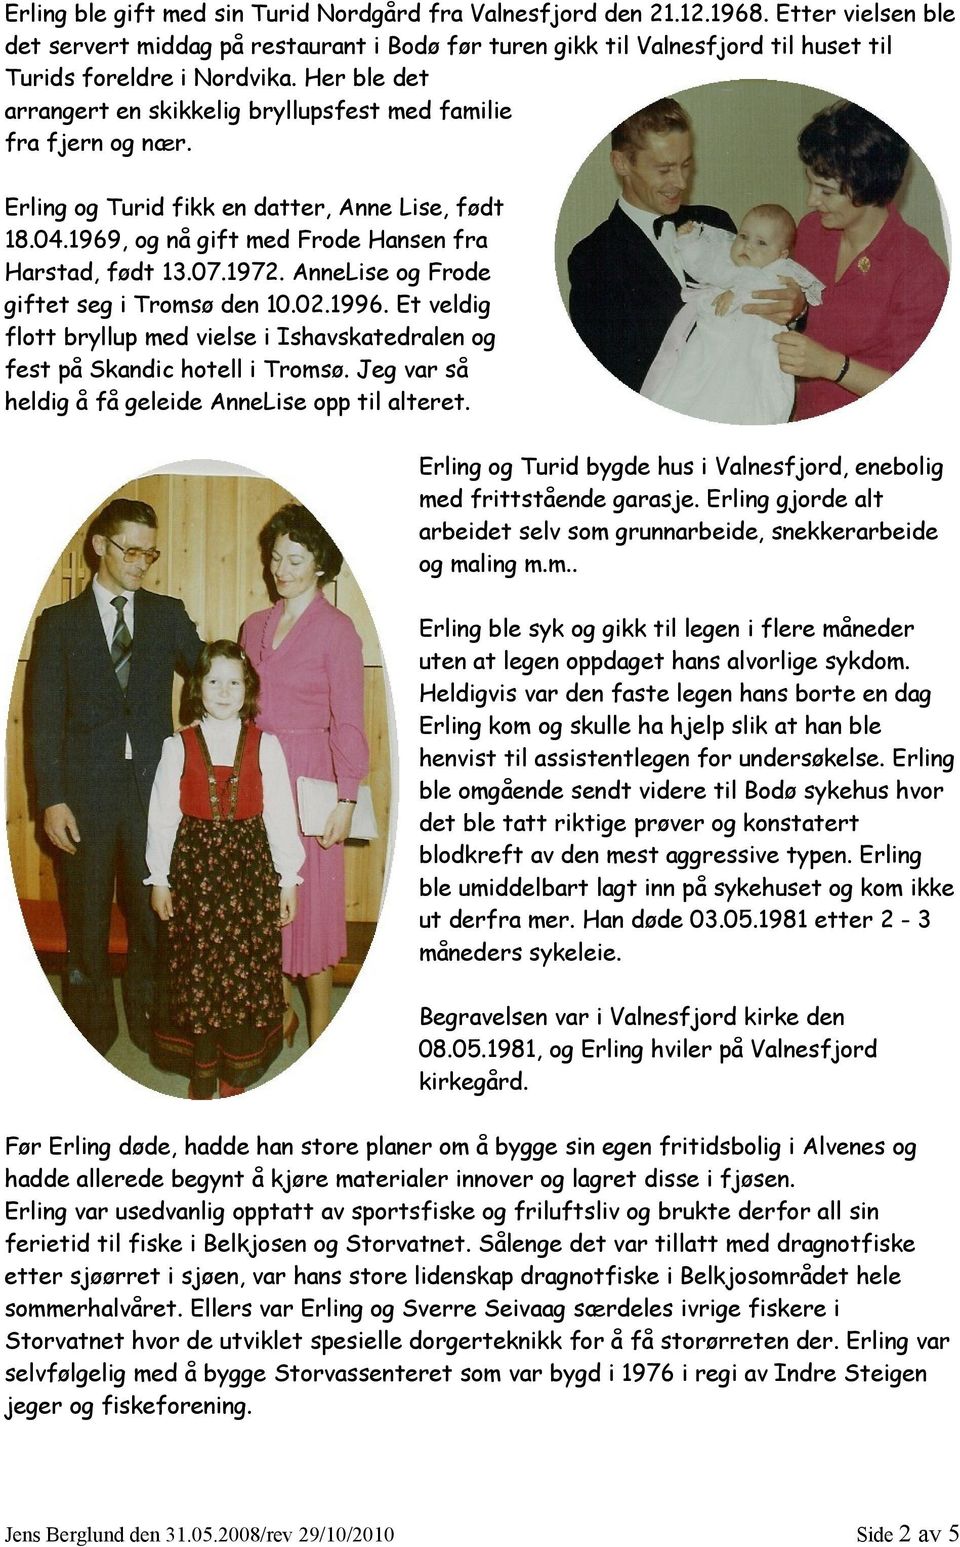 Her ble det arrangert en skikkelig bryllupsfest med familie fra fjern og nær. Erling og Turid fikk en datter, Anne Lise, født 18.04.1969, og nå gift med Frode Hansen fra Harstad, født 13.07.1972.